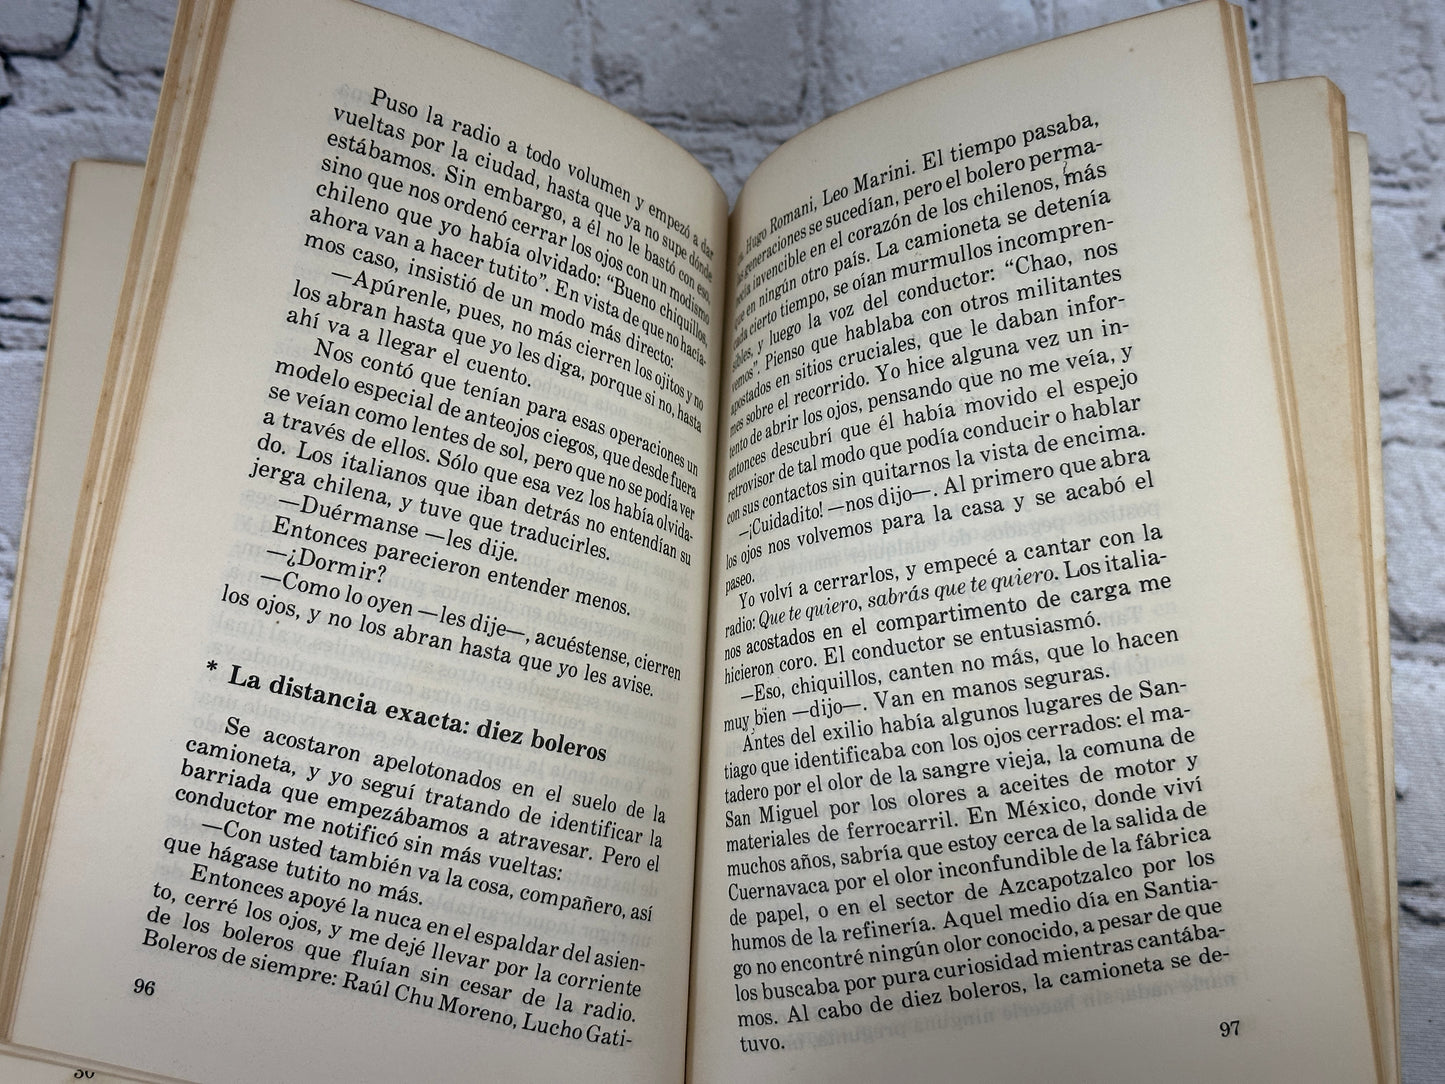 La aventura de Miguel Littín clandestino en Chile By Gabriel Garcia Marquez 1986